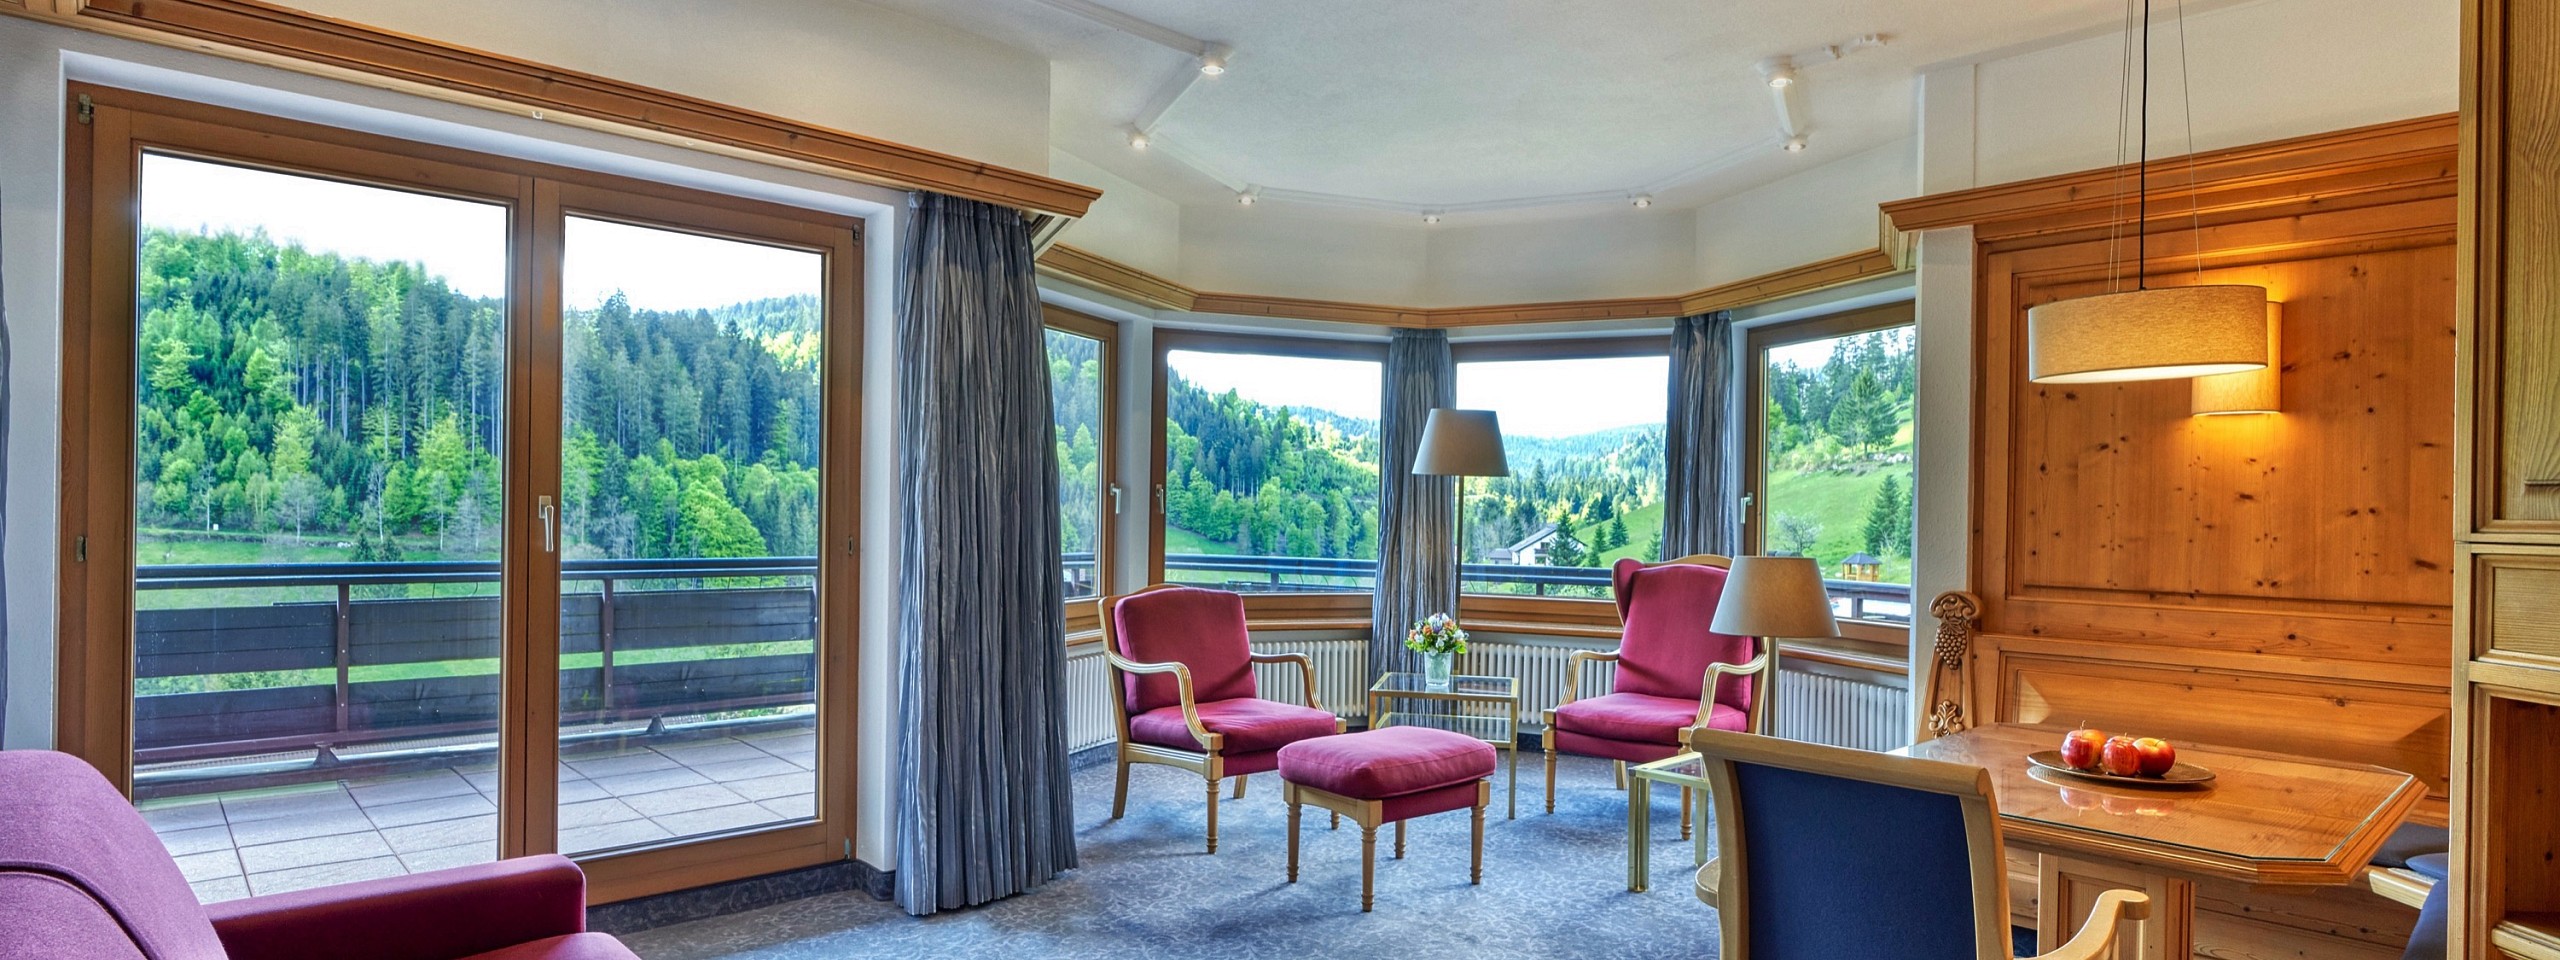 Junior-Suite, eines der Hotelzimmer im Schwarzwald, mit mehreren Sitzgelegenheiten.